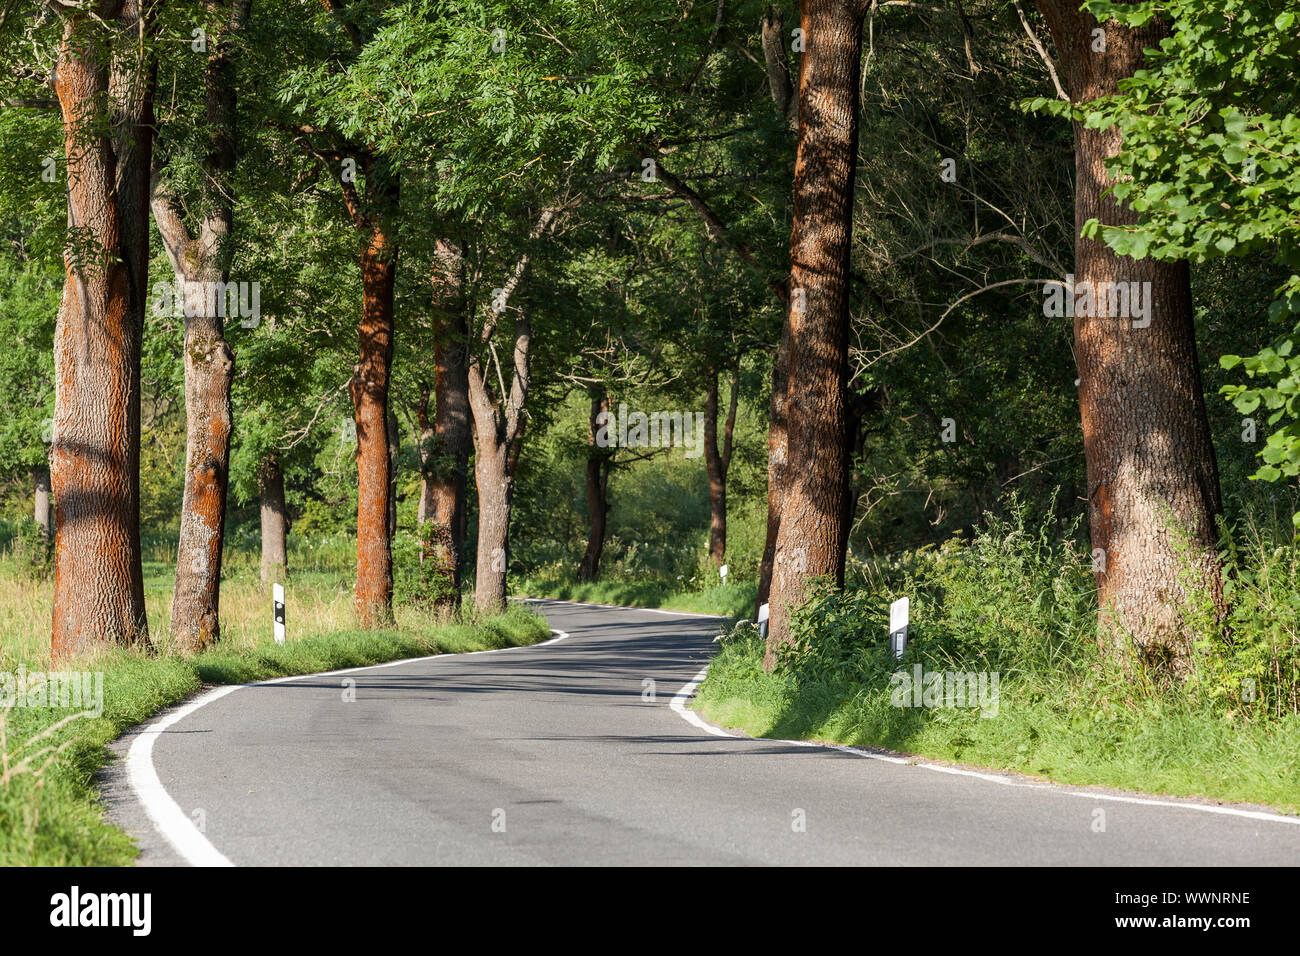 Route de campagne avec des arbres comme avenue Banque D'Images